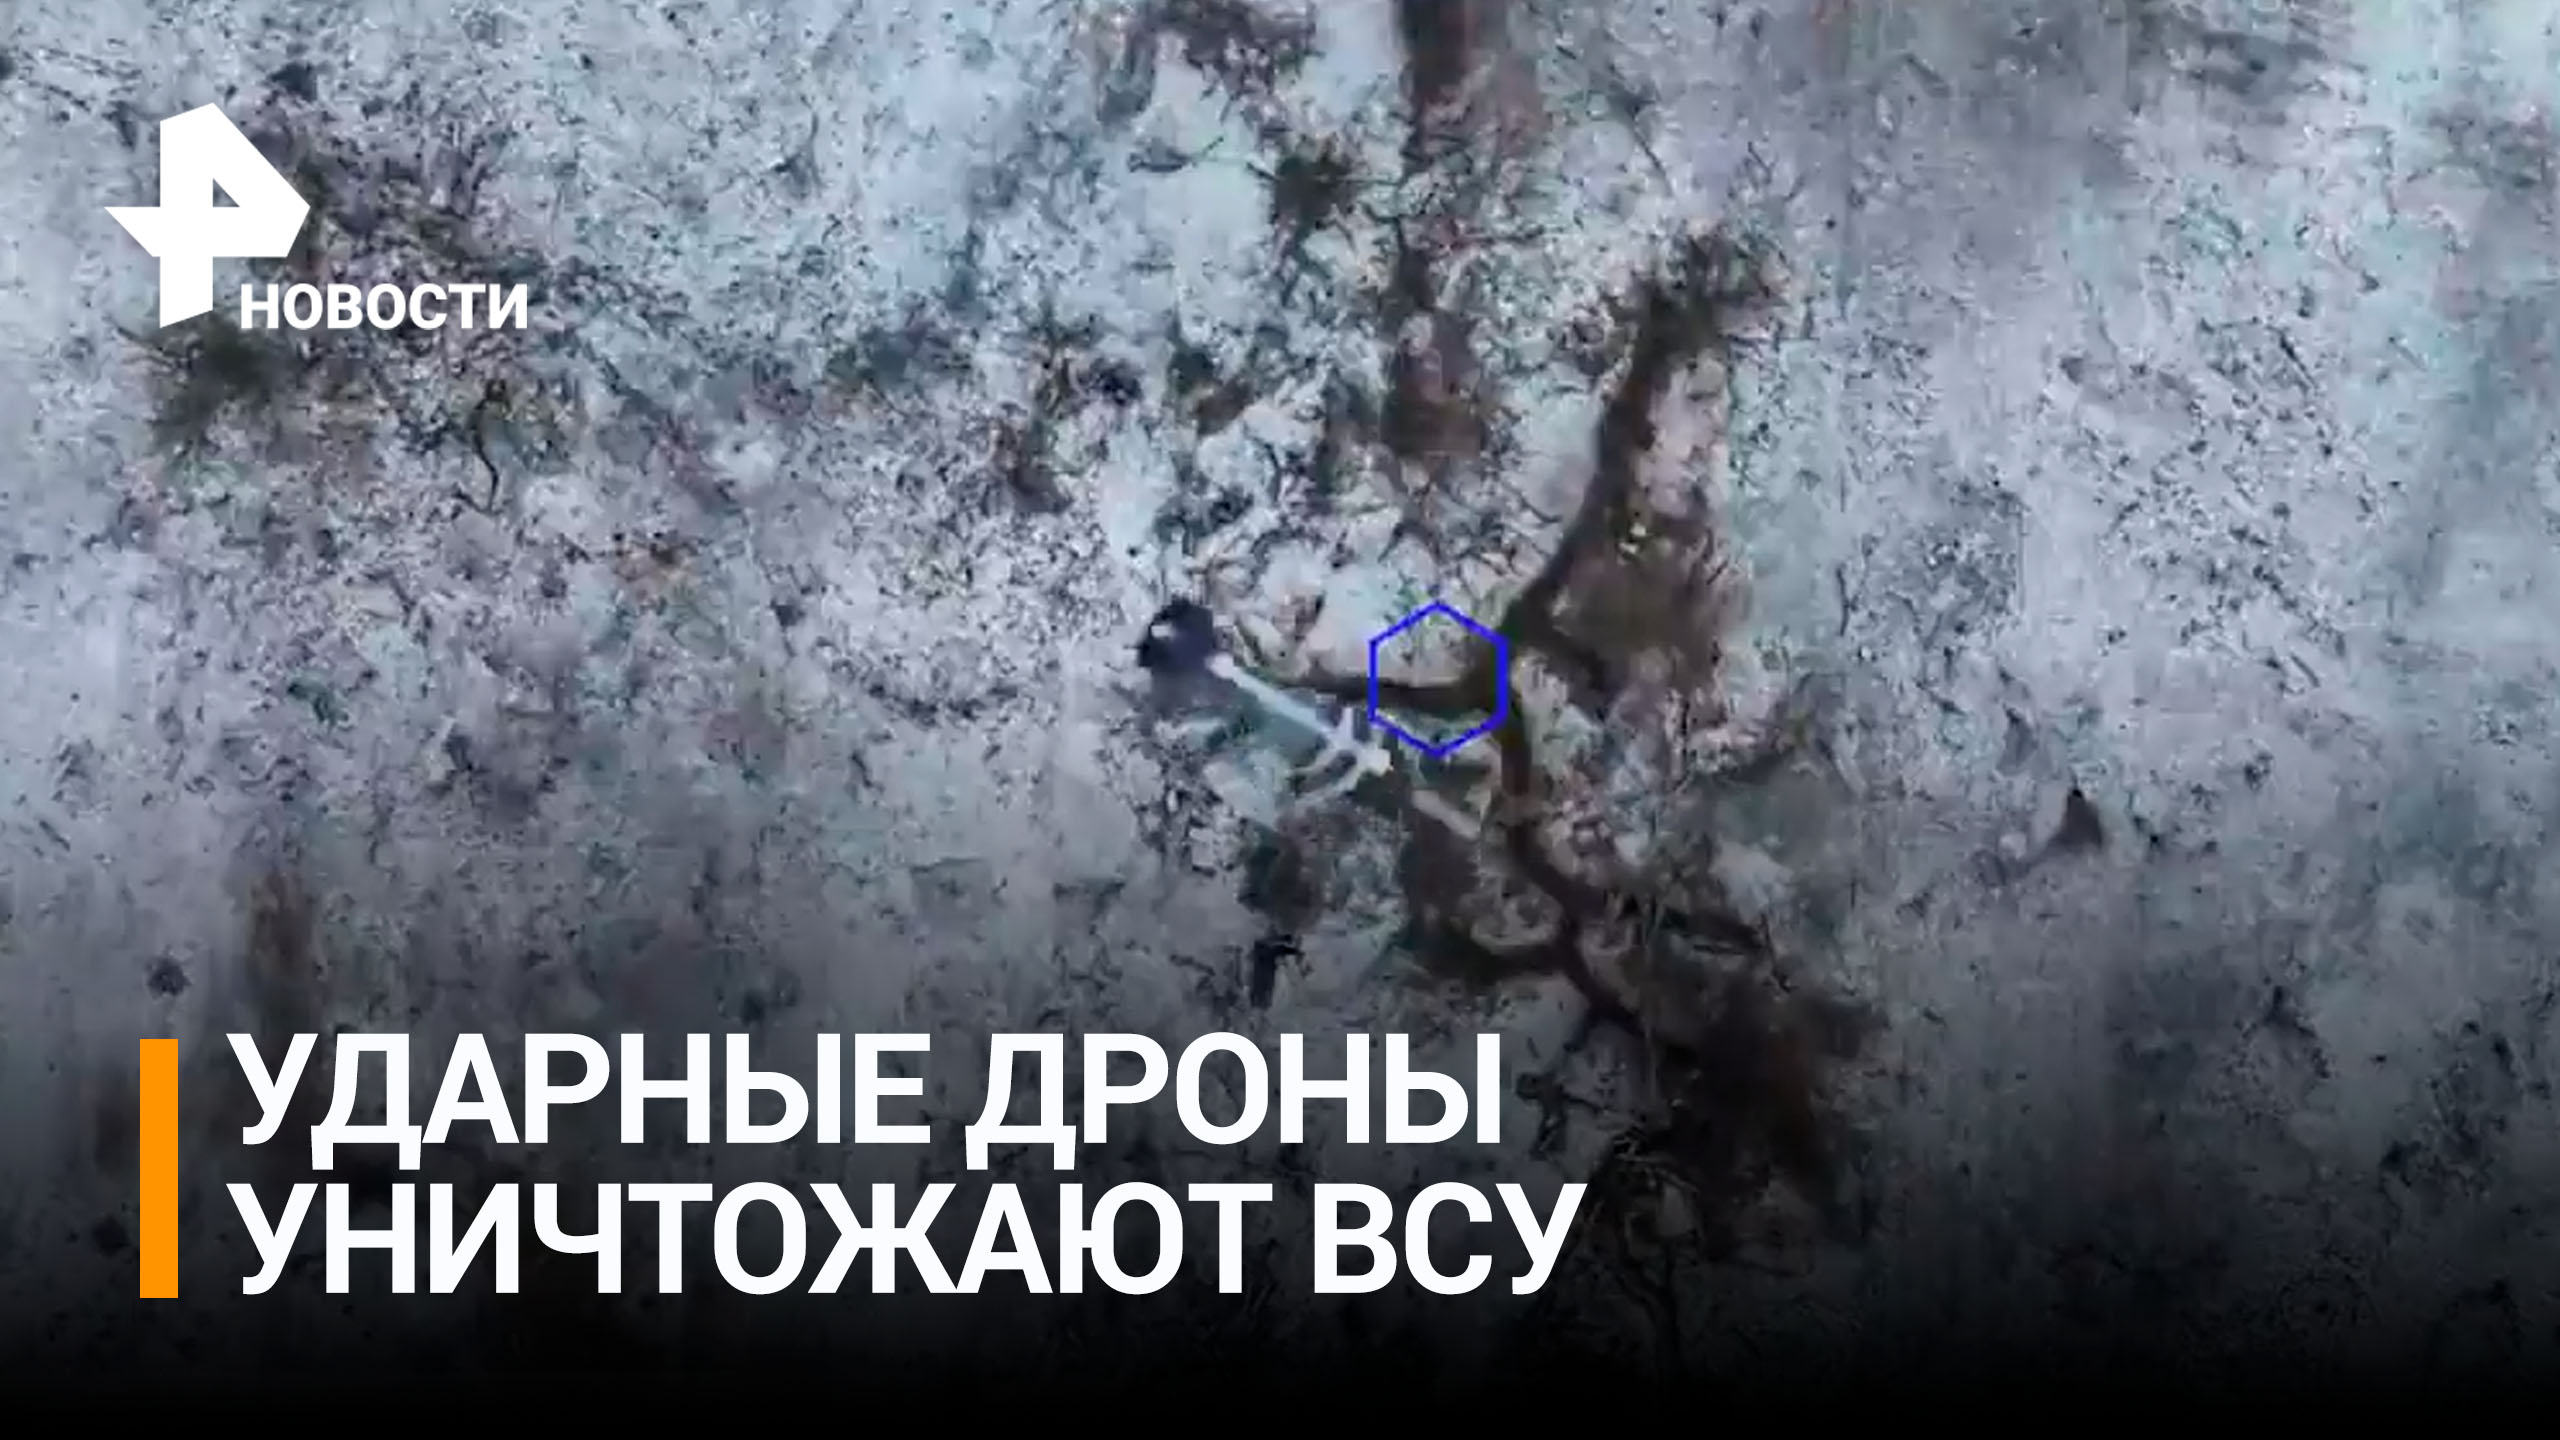 Найти и уничтожить: ударные дроны прицельно точно сбрасывают бомбы на позиции врага / РЕН Новости